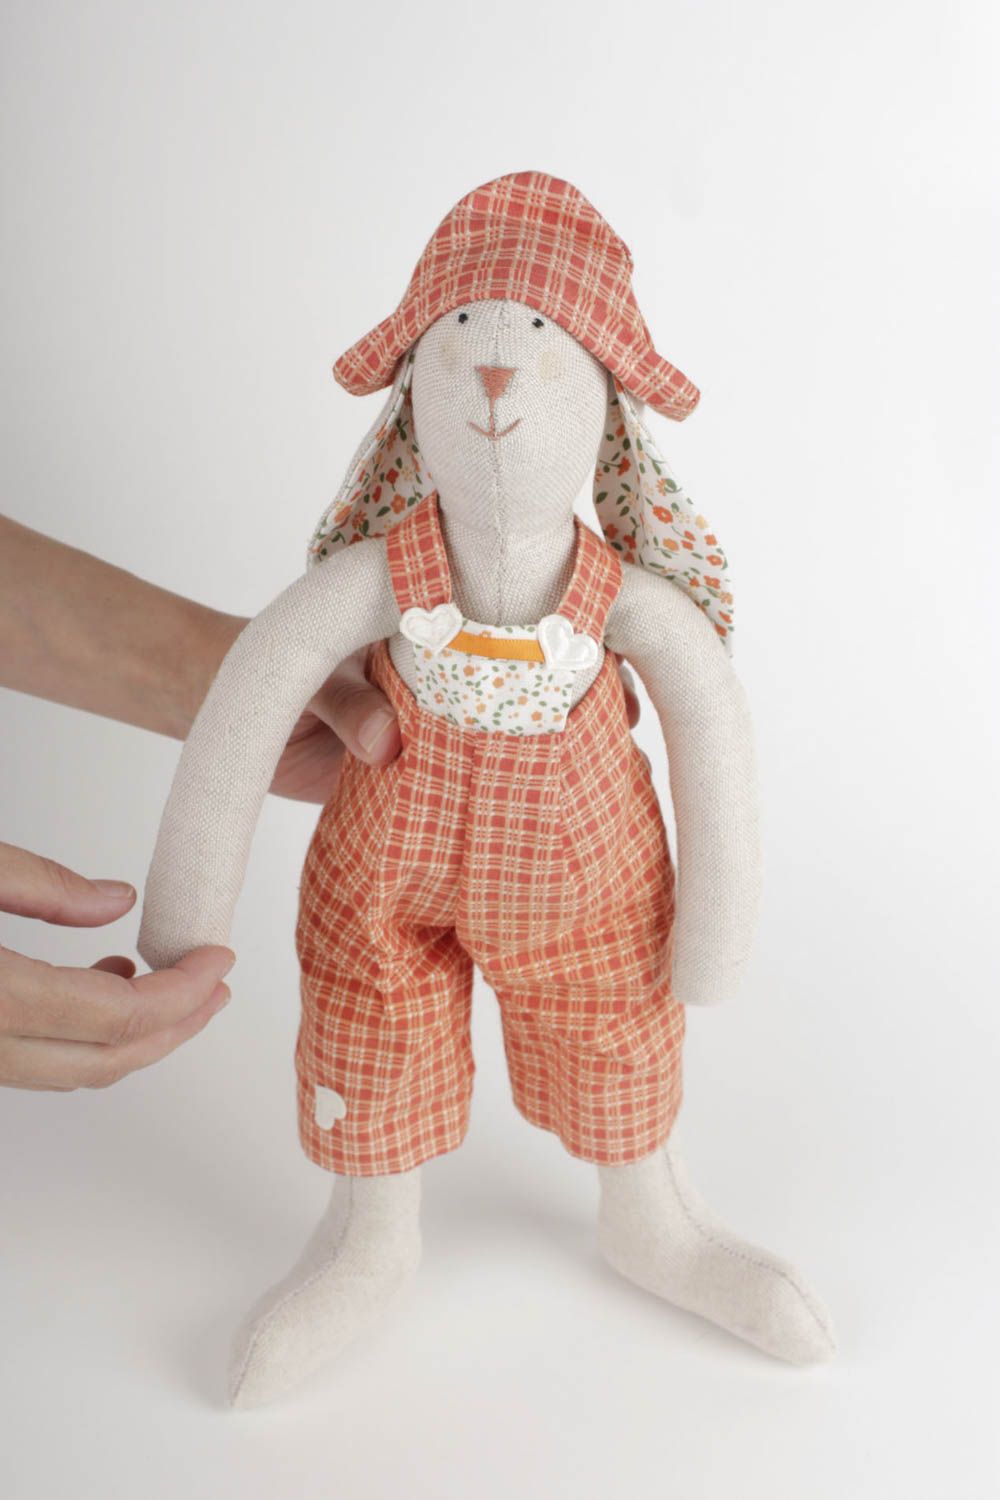 Kuscheltier Hase handgemacht Geschenk für Kinder Haus Deko schön groß dekorativ foto 2